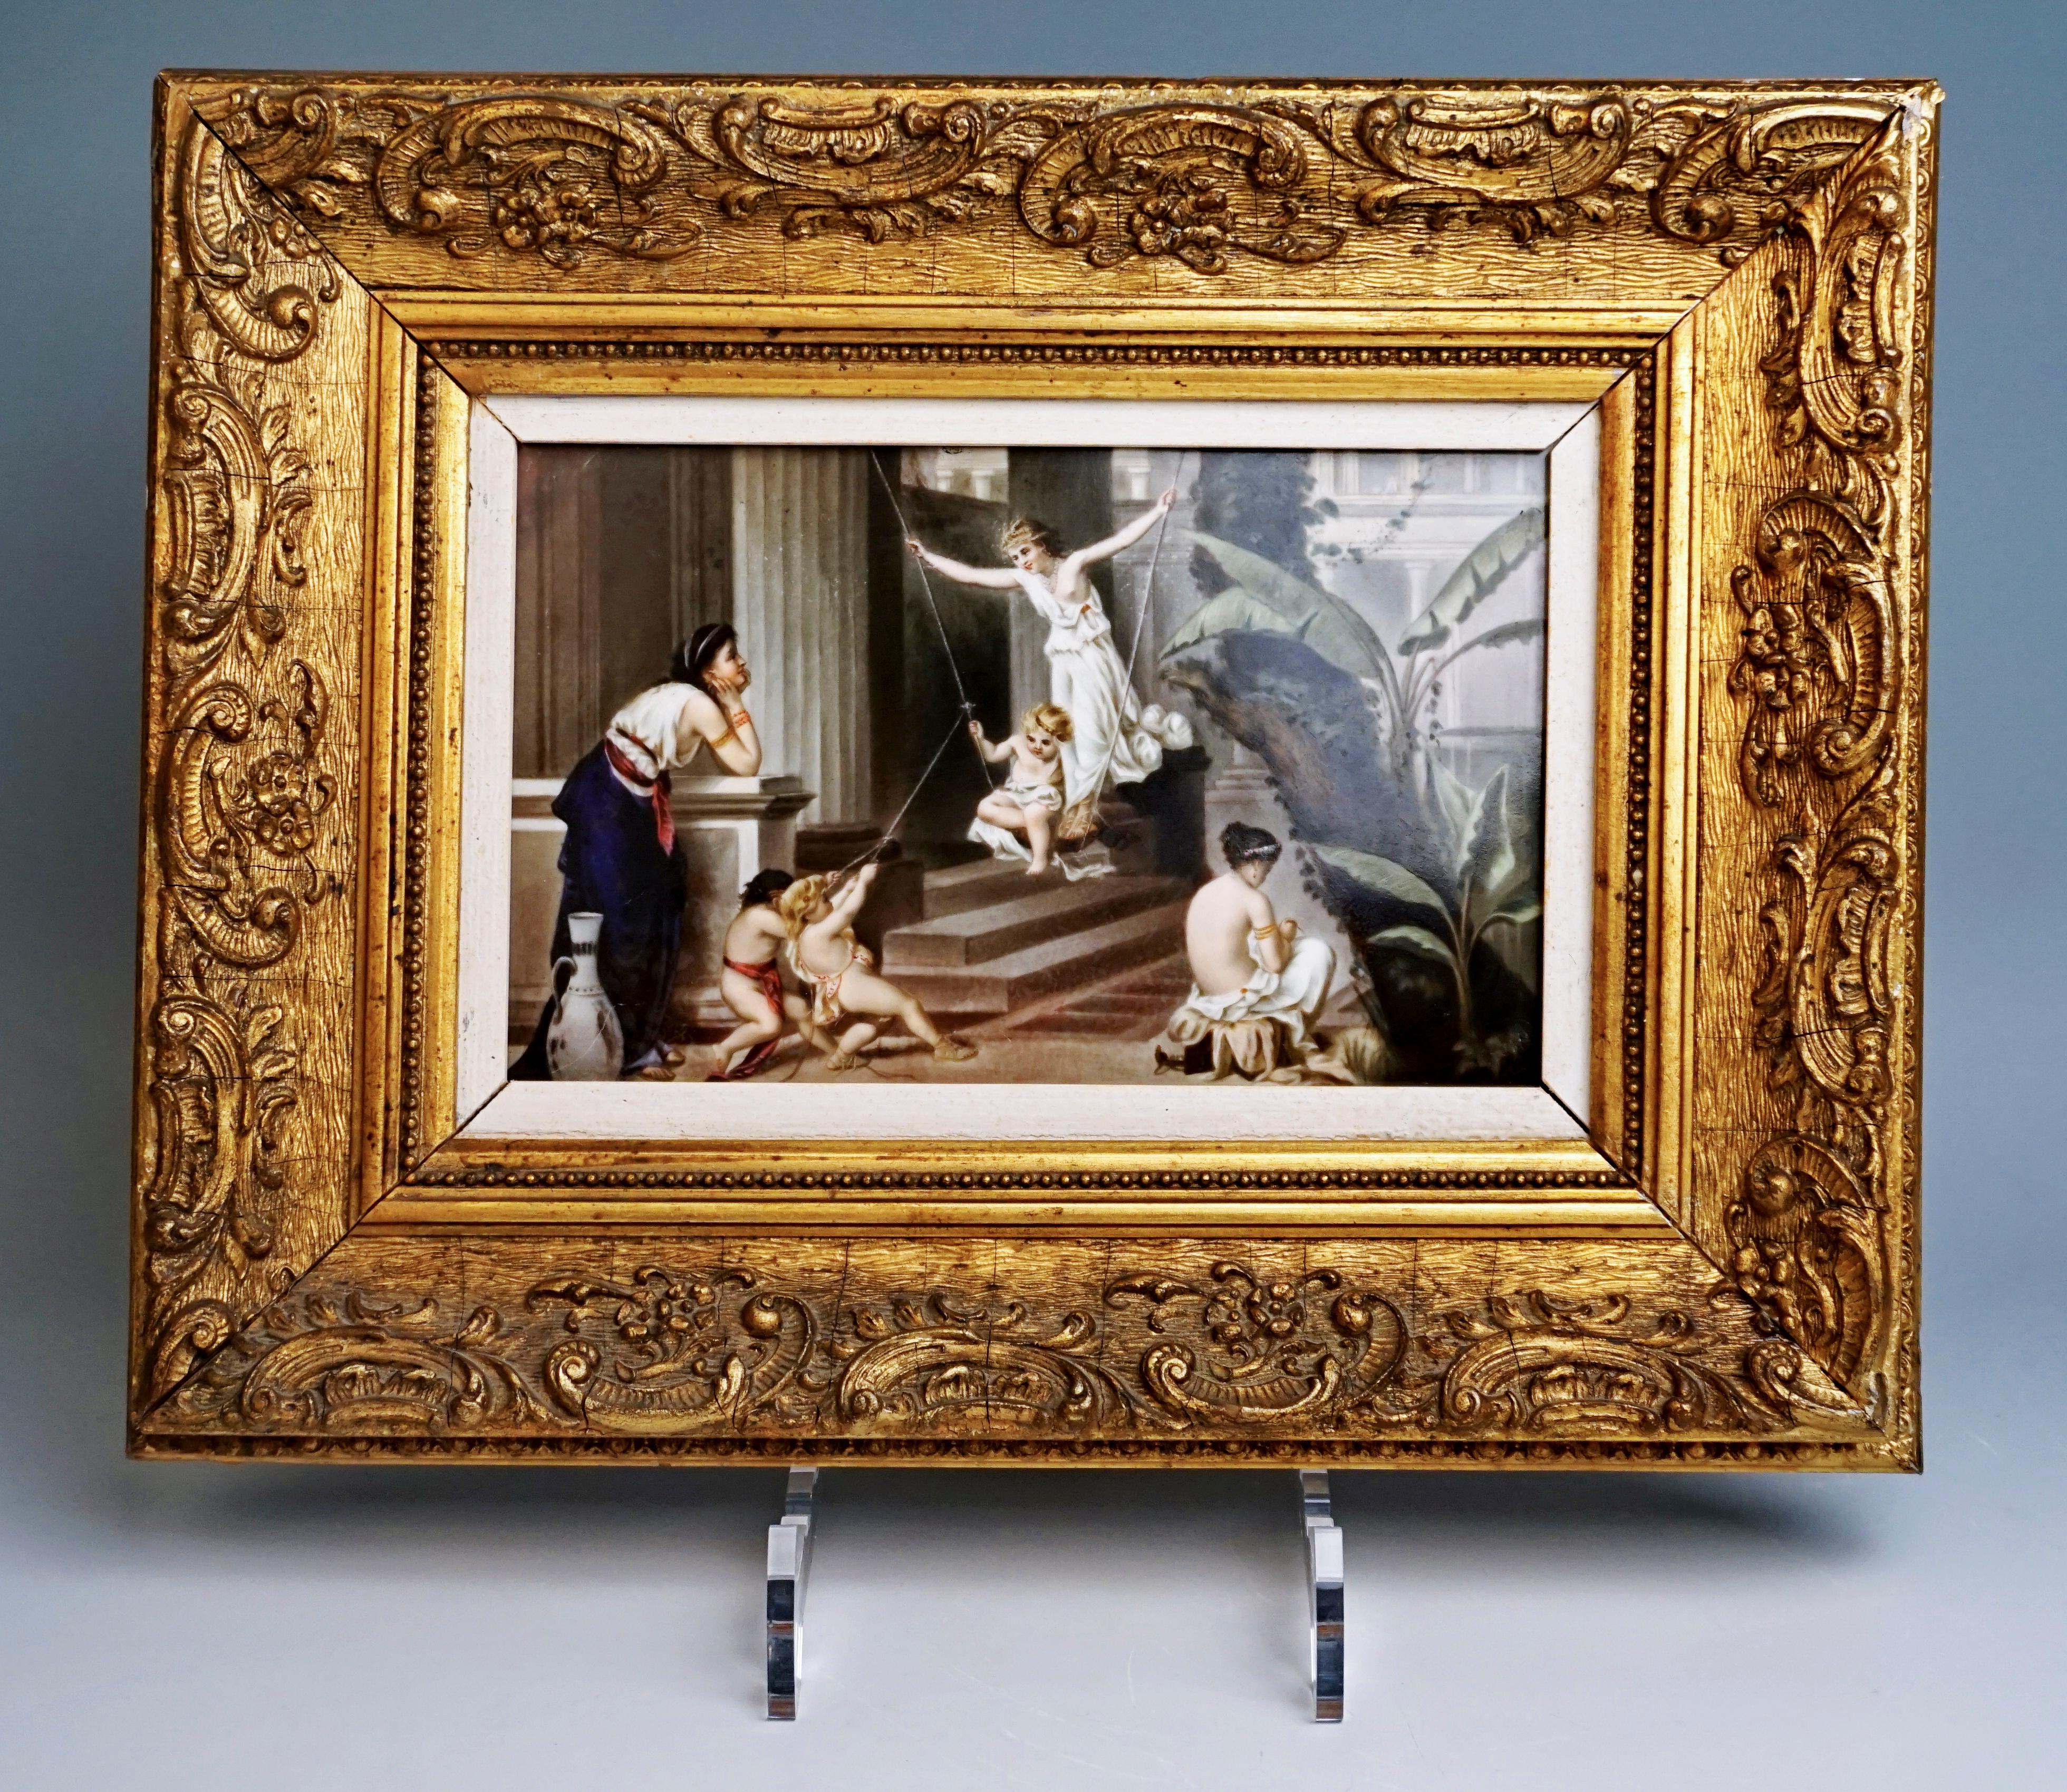 Pintura de porcelana: Representación de arquitectura greco-antigua con ninfas y putti jugando, en parte en un columpio, observados por una joven que apoya los codos en un parapeto y apoya la cabeza en las manos, a la derecha un árbol y